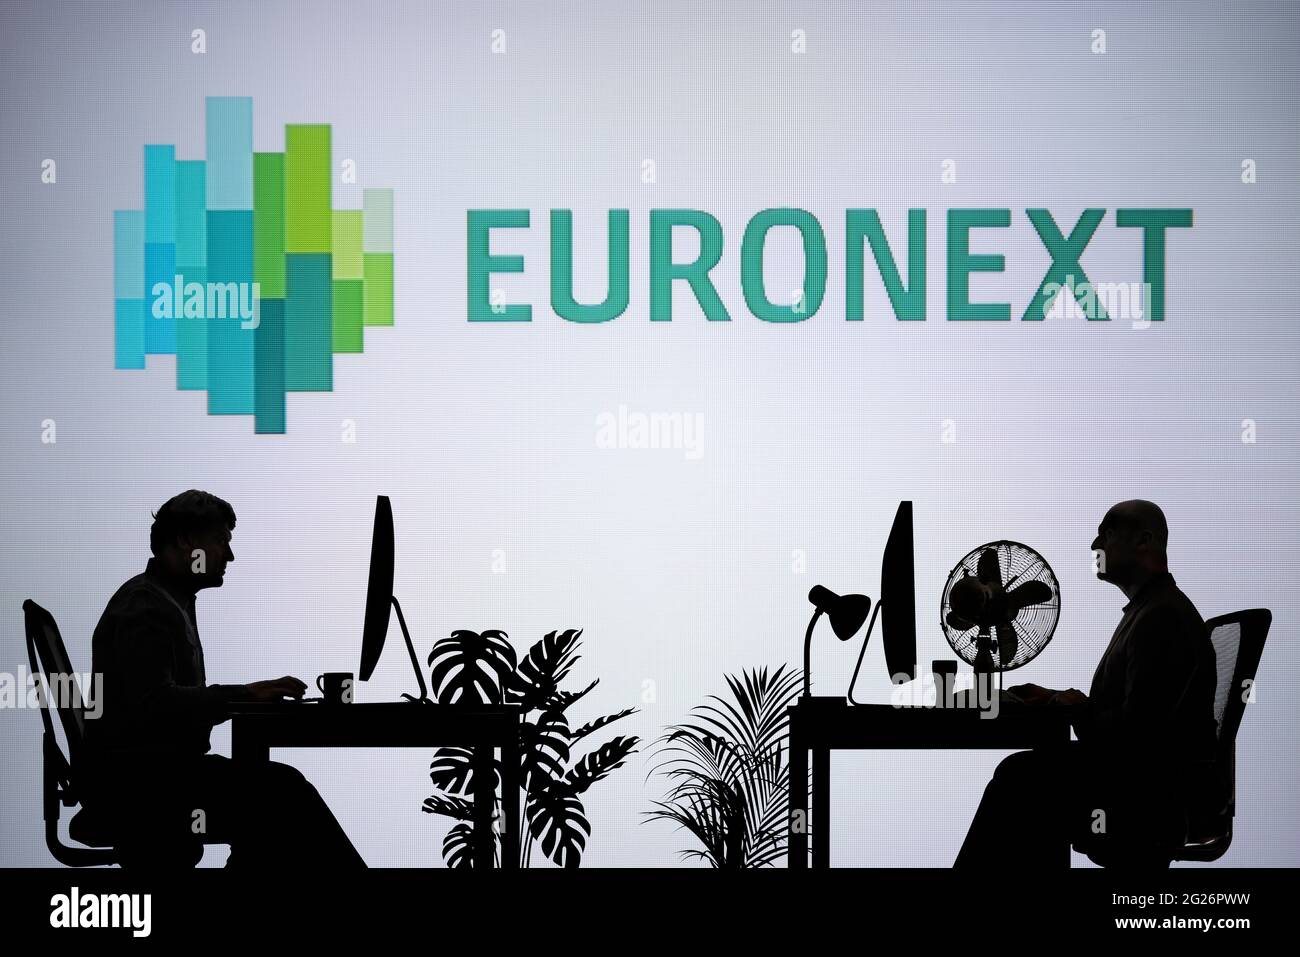 Le logo Euronext est visible sur un écran LED en arrière-plan tandis que deux personnes silhouetées travaillent dans un environnement de bureau (usage éditorial uniquement) Banque D'Images